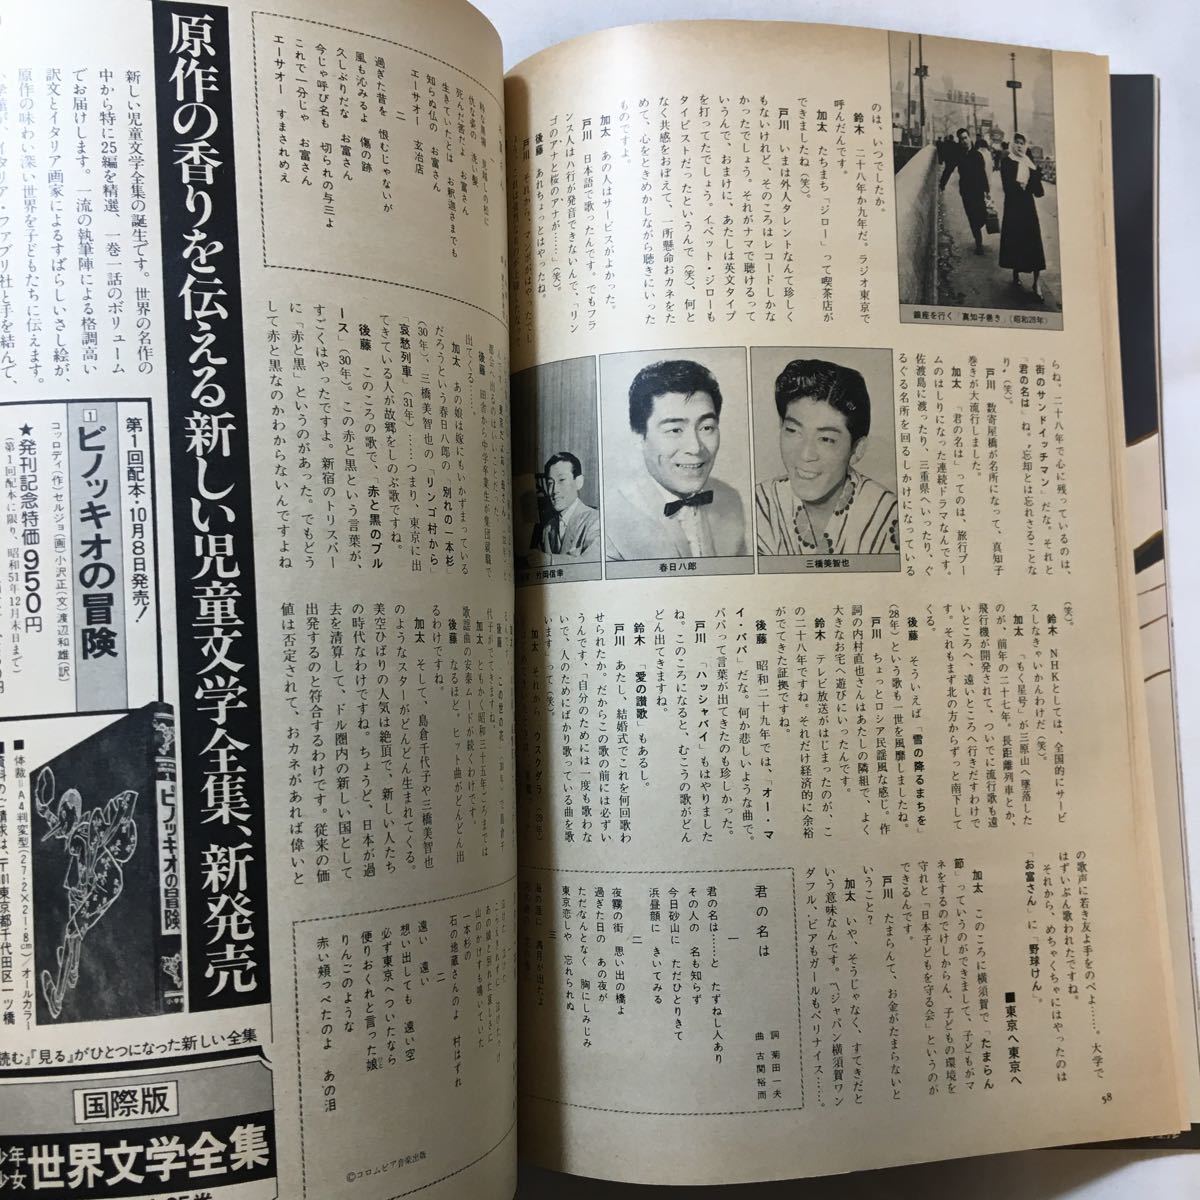 zaa-289♪文藝春秋デラックス 心のふるさと日本のうた はやり歌昭和50年　1976年11月号　レトロ　昭和